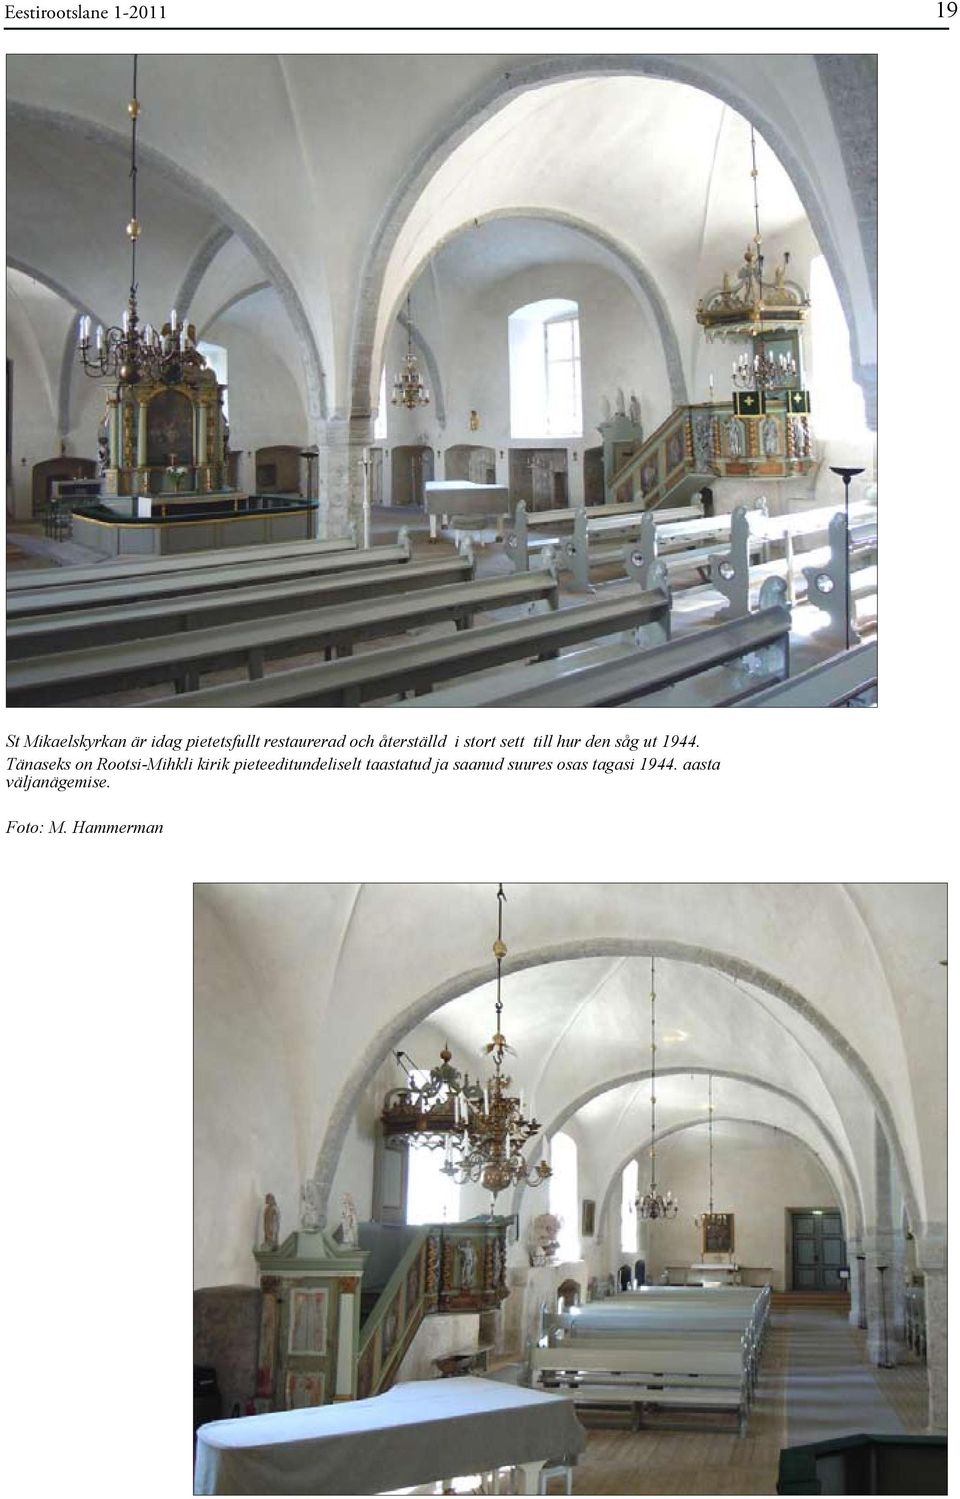 Tänaseks on Rootsi-Mihkli kirik pieteeditundeliselt taastatud ja